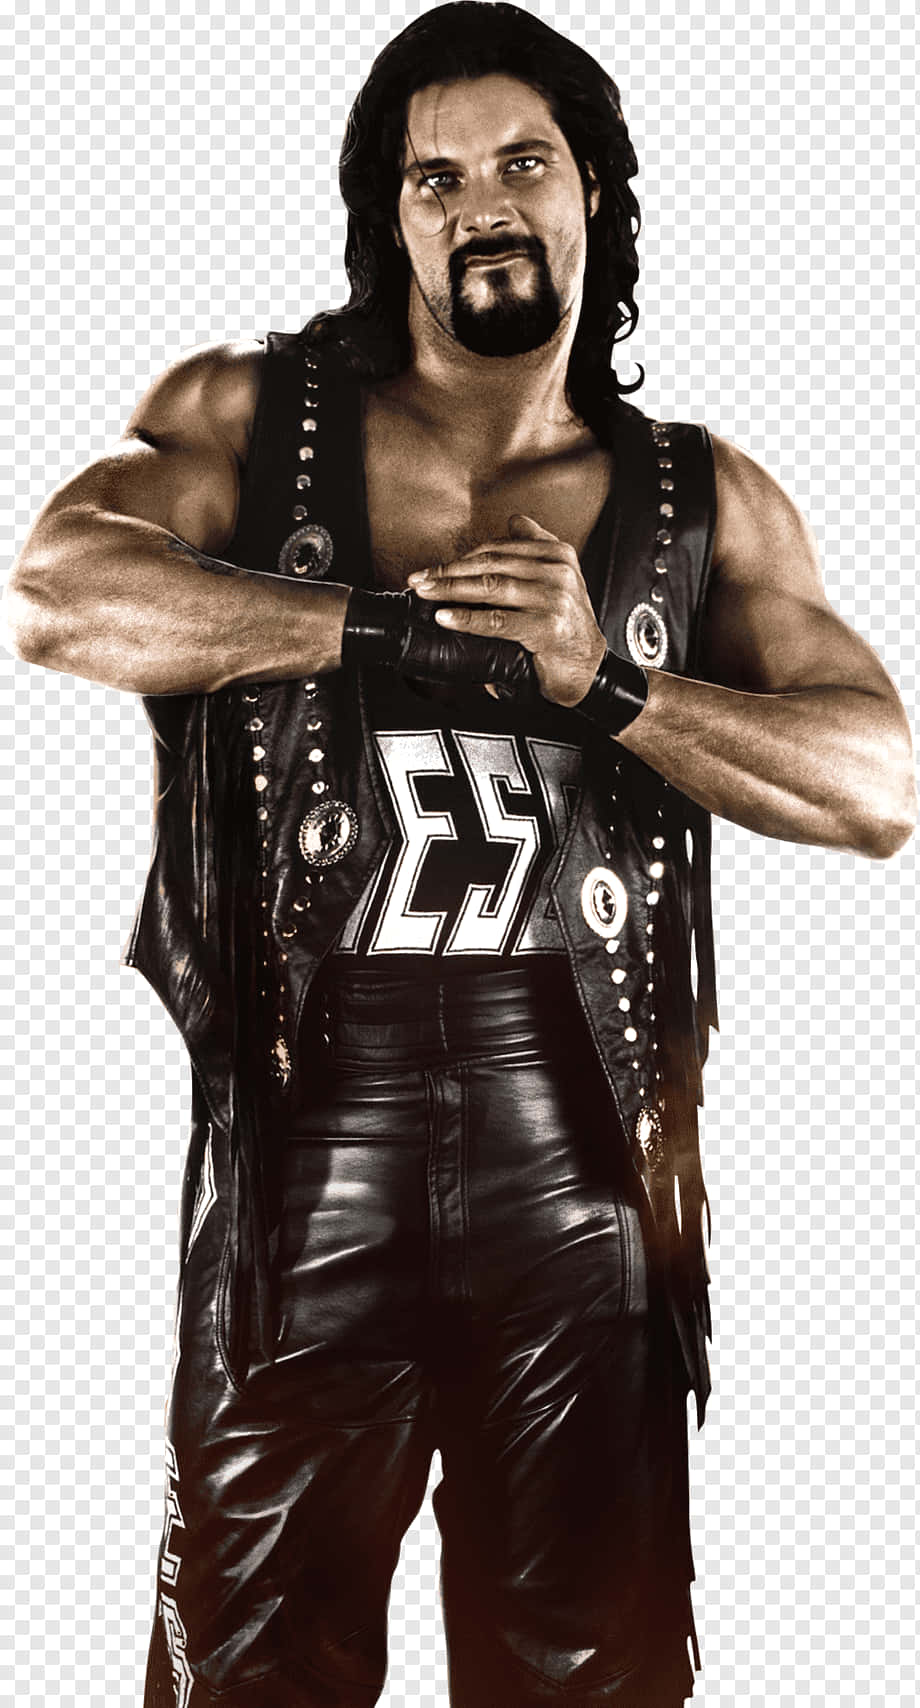 Kevin Nash As Diesel In WWE 2K14 Wallpaper